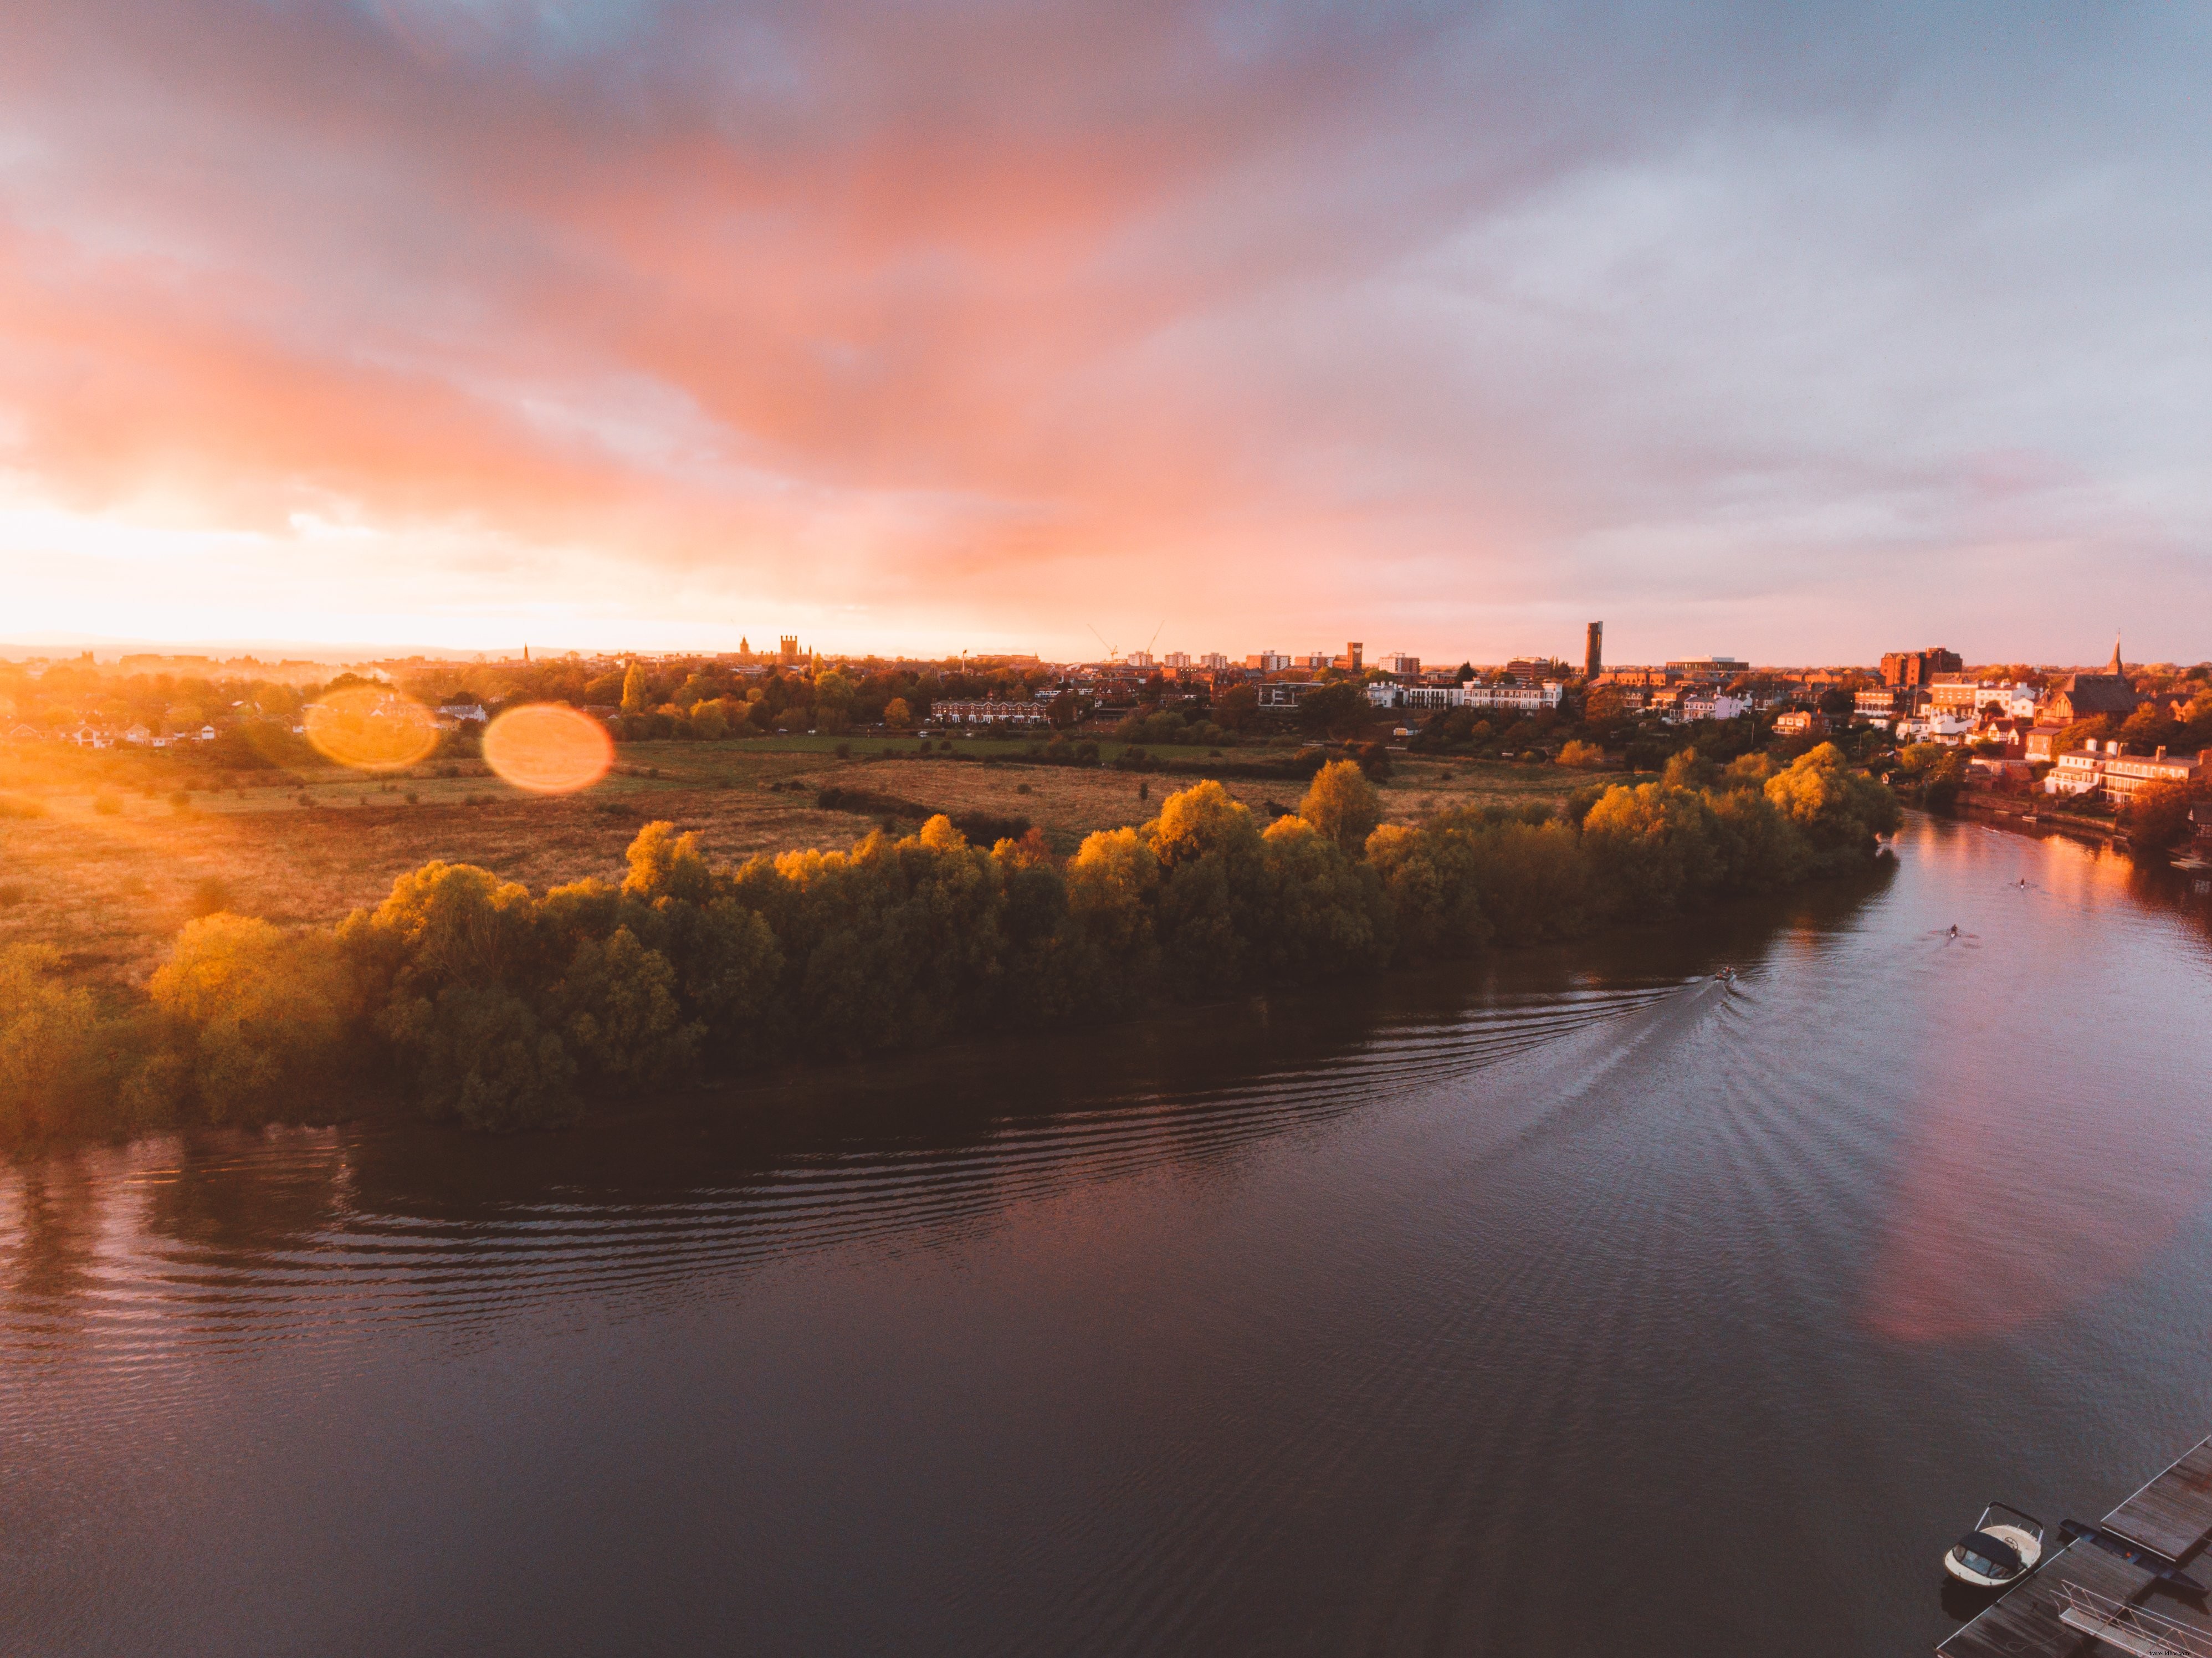 Foto do pôr do sol sobre um rio tranquilo